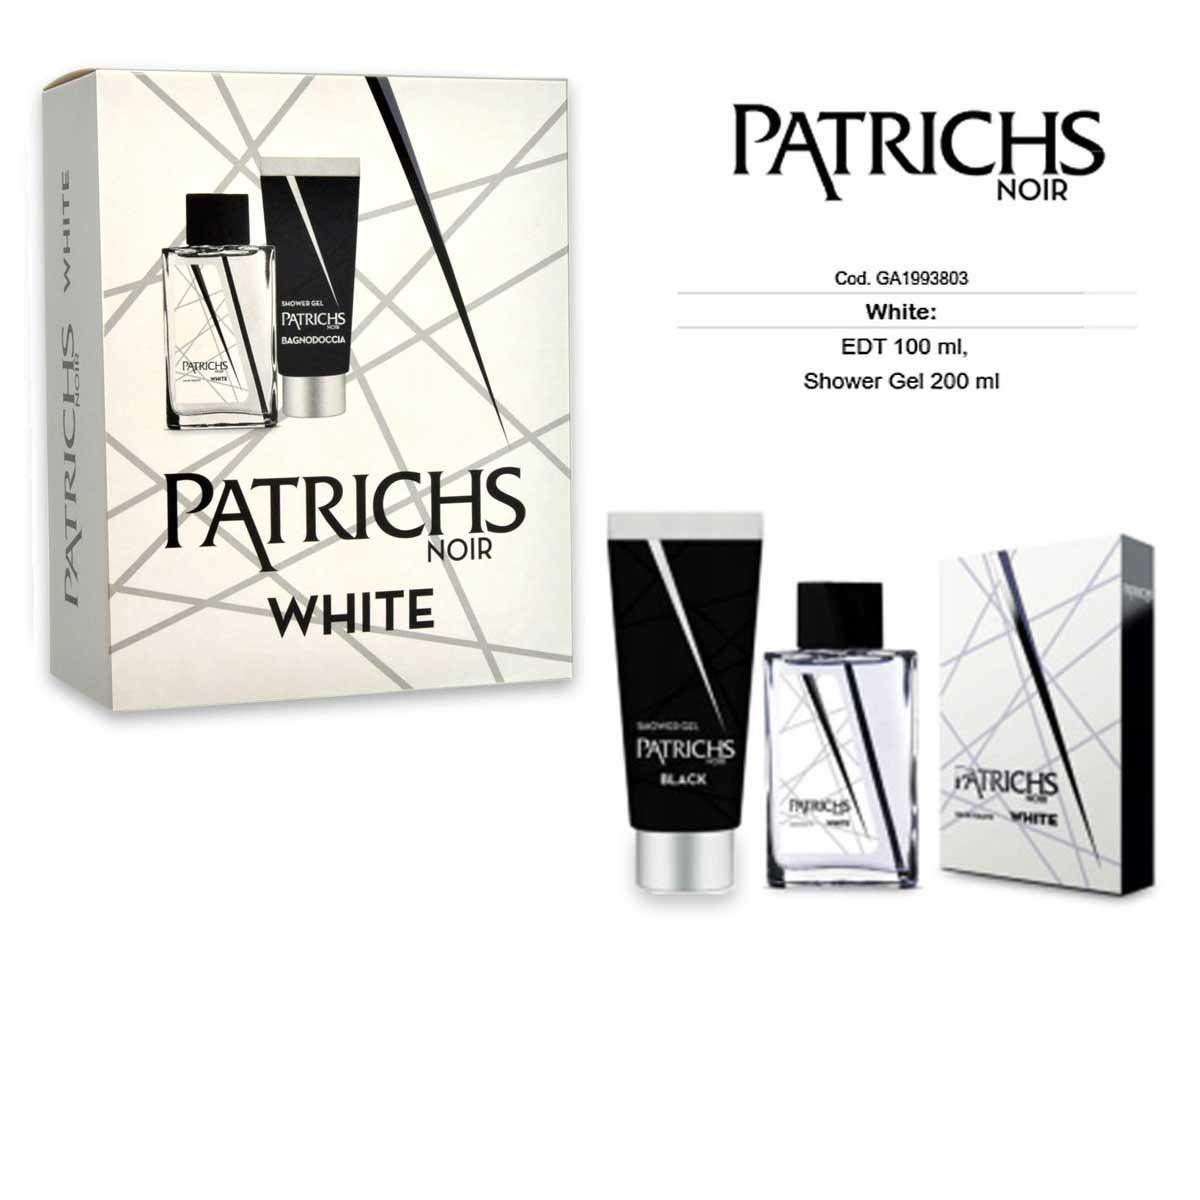 Patrichs white: edt 100ml + shower gel 200ml